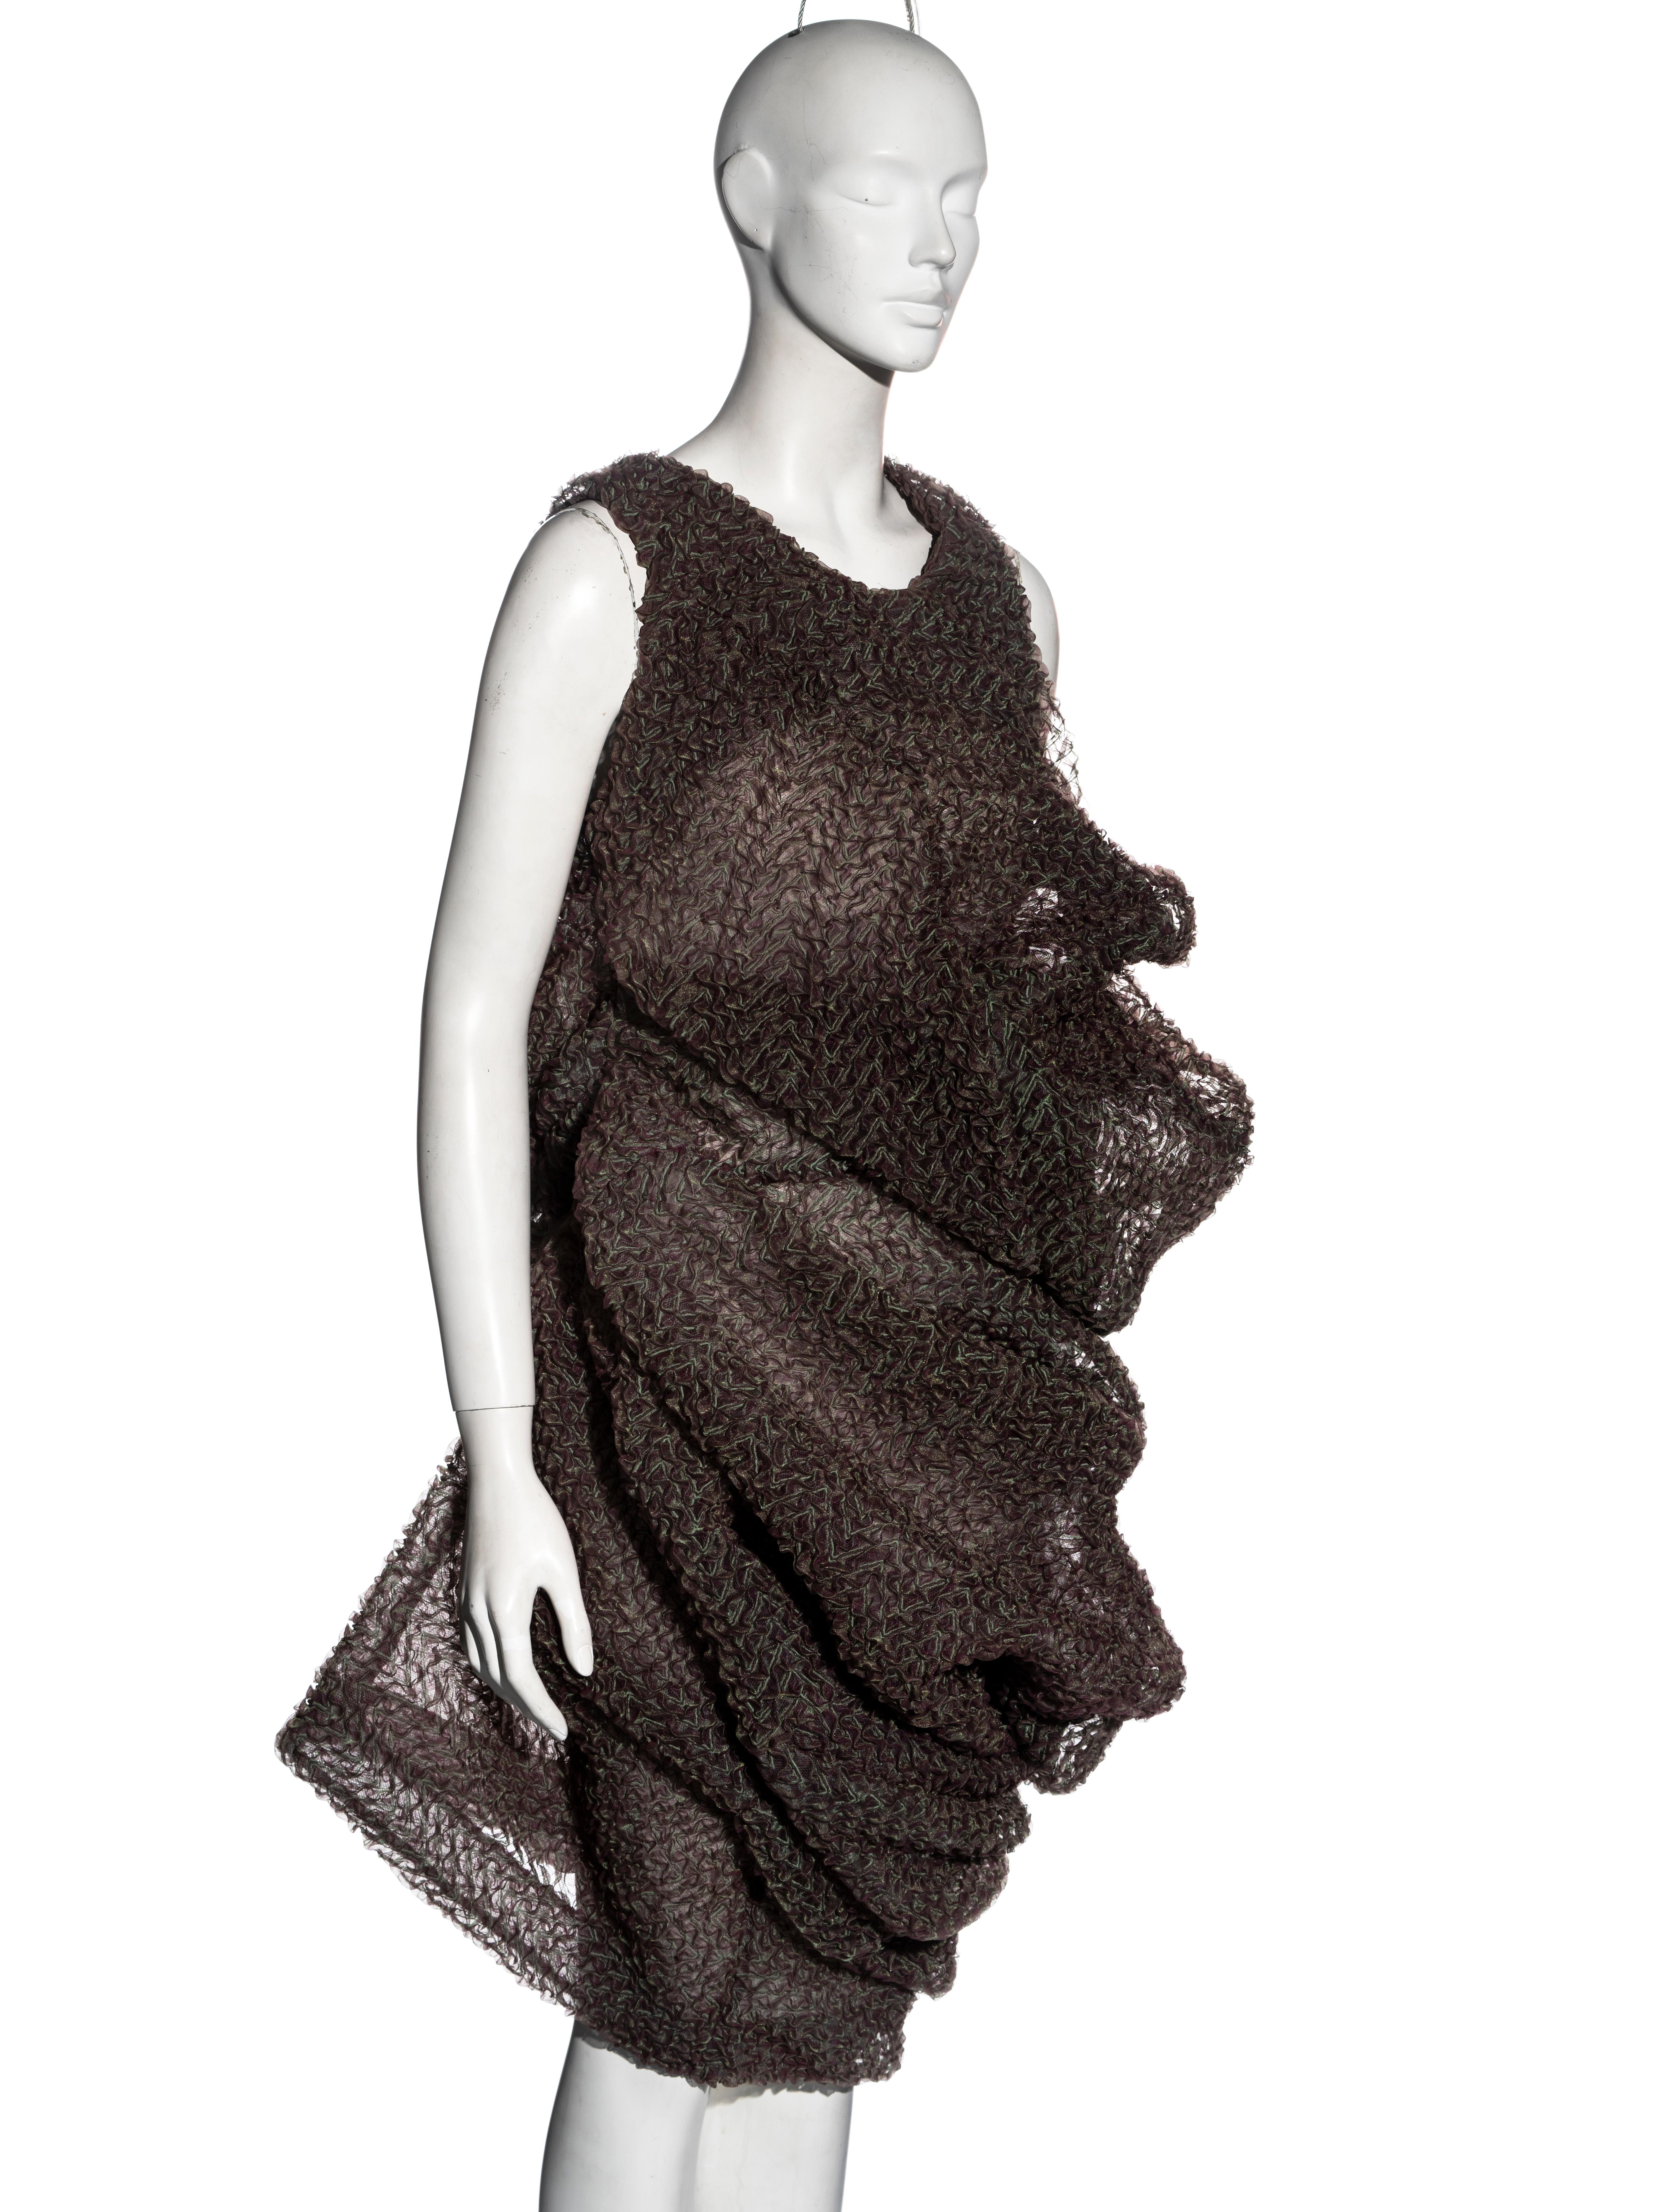 Black Comme des Garçons 'Body Meets Dress, Dress Meets Body' dress, ss 1997